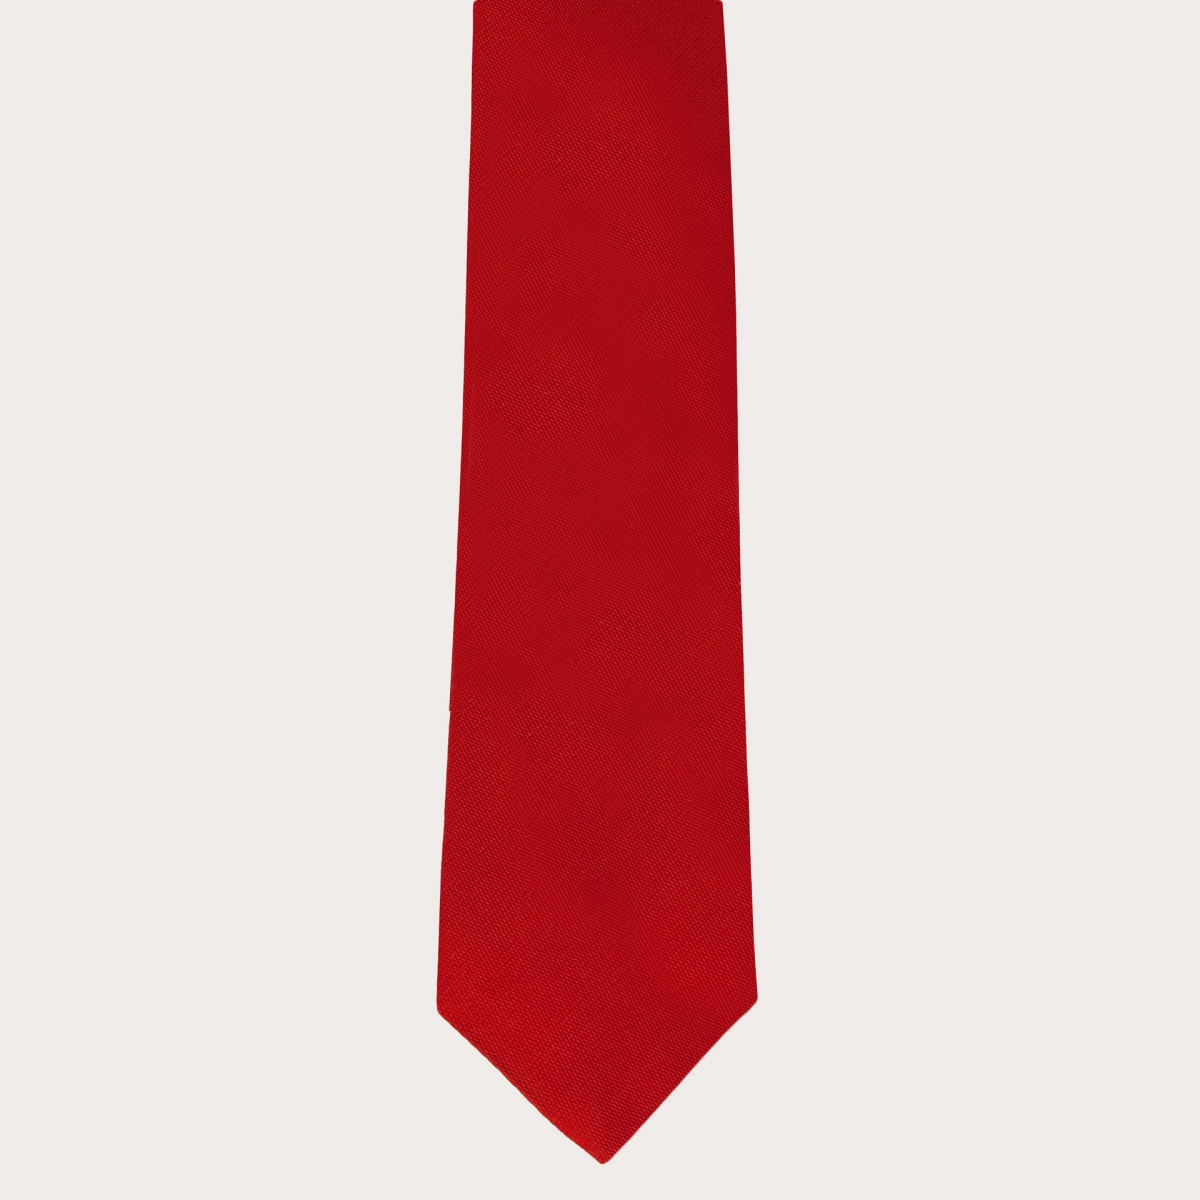 BRUCLE Ensemble de bretelles homme avec boutonnières et cravate en soie, rouge